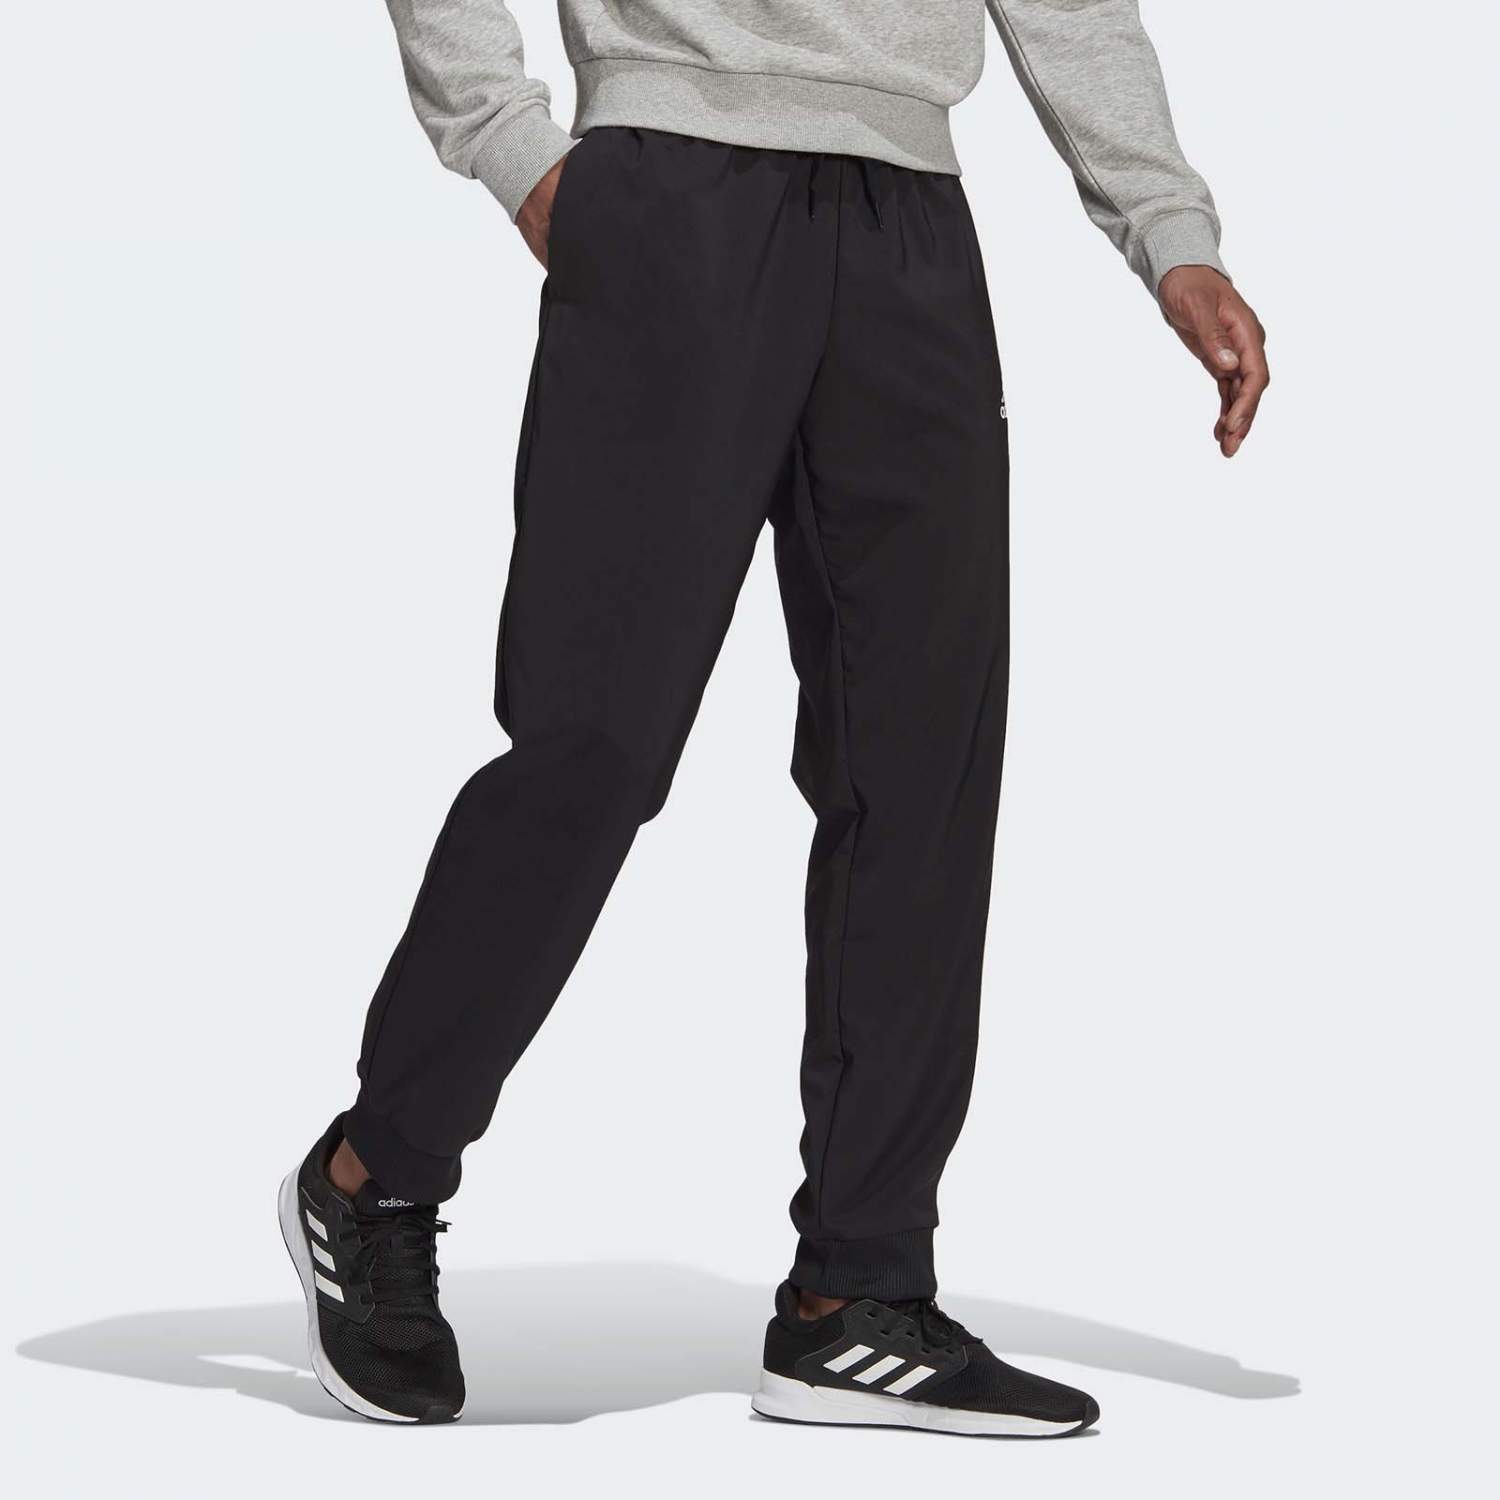 Спортивные брюки мужские Adidas M STANFRD TC PT черные M - купить в Москве,цены на Мегамаркет